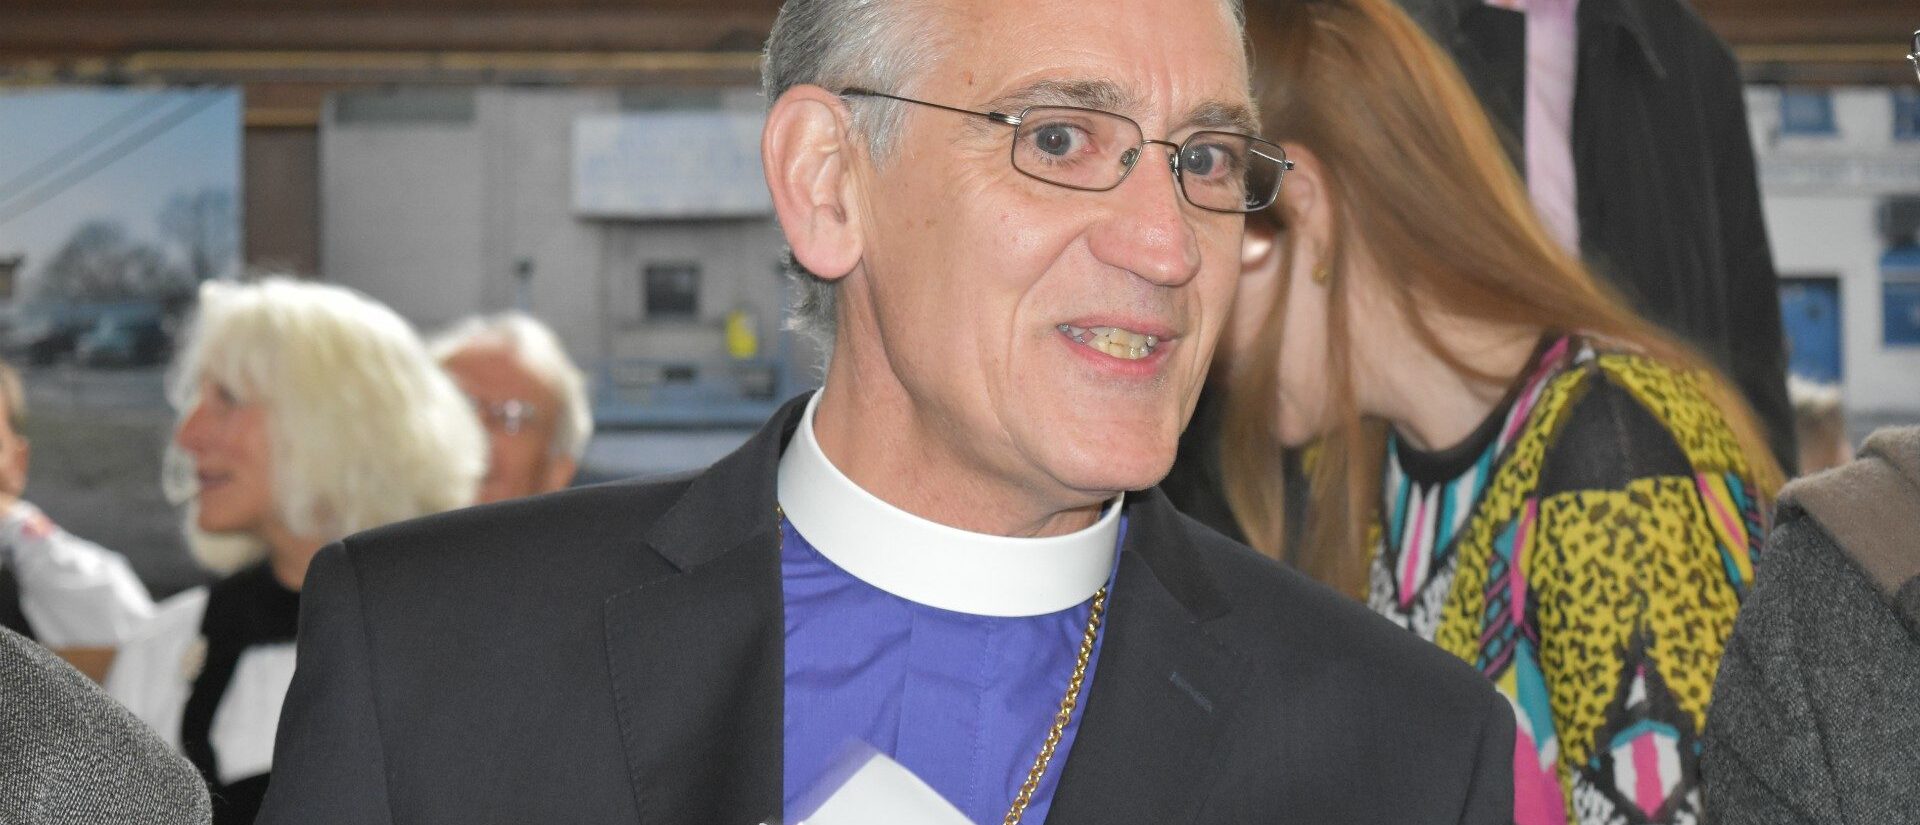 Harald Rein est évêque de l'Eglise catholique-chrétienne de Suisse depuis 2009 | © Jacques Berset